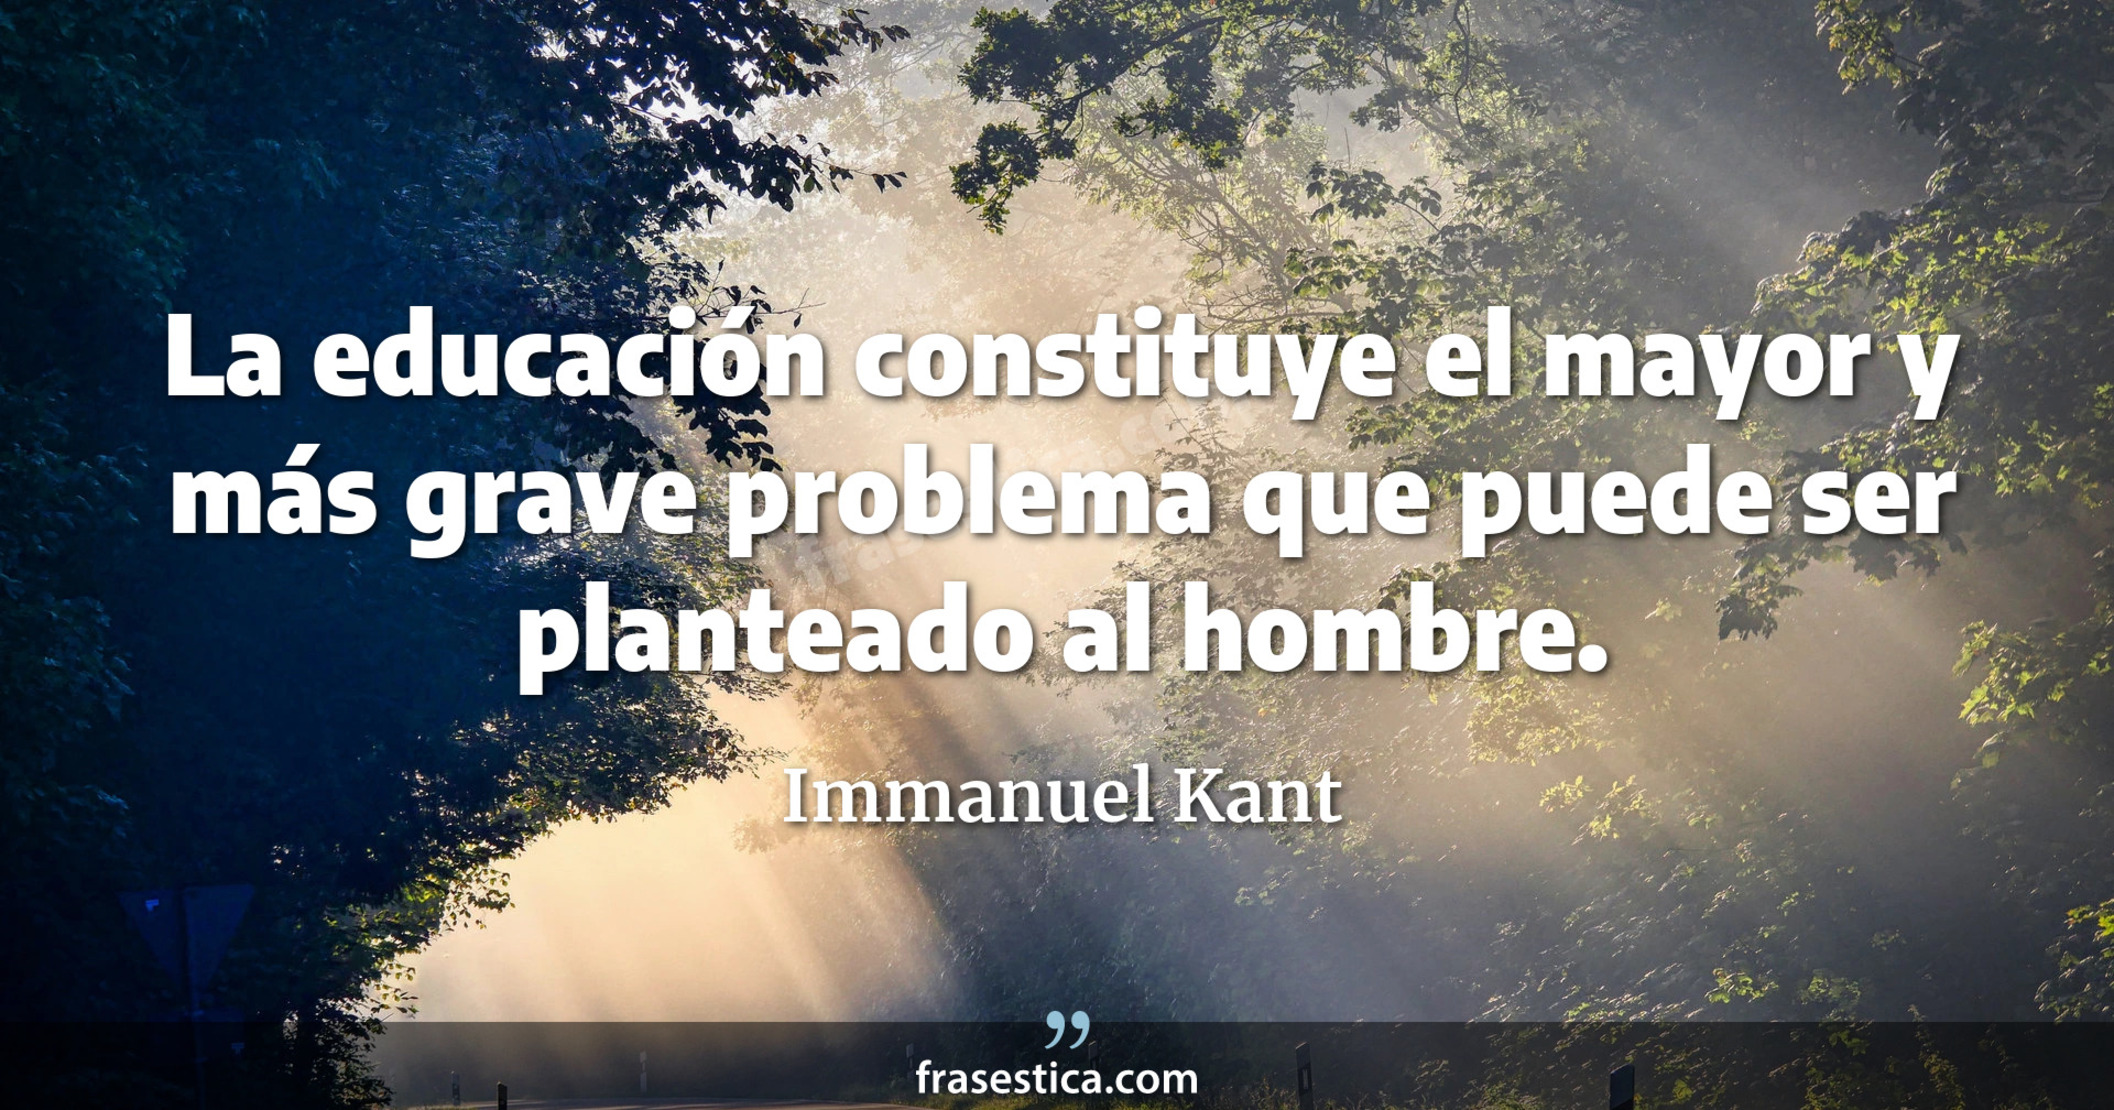 La educación constituye el mayor y más grave problema que puede ser planteado al hombre. - Immanuel Kant